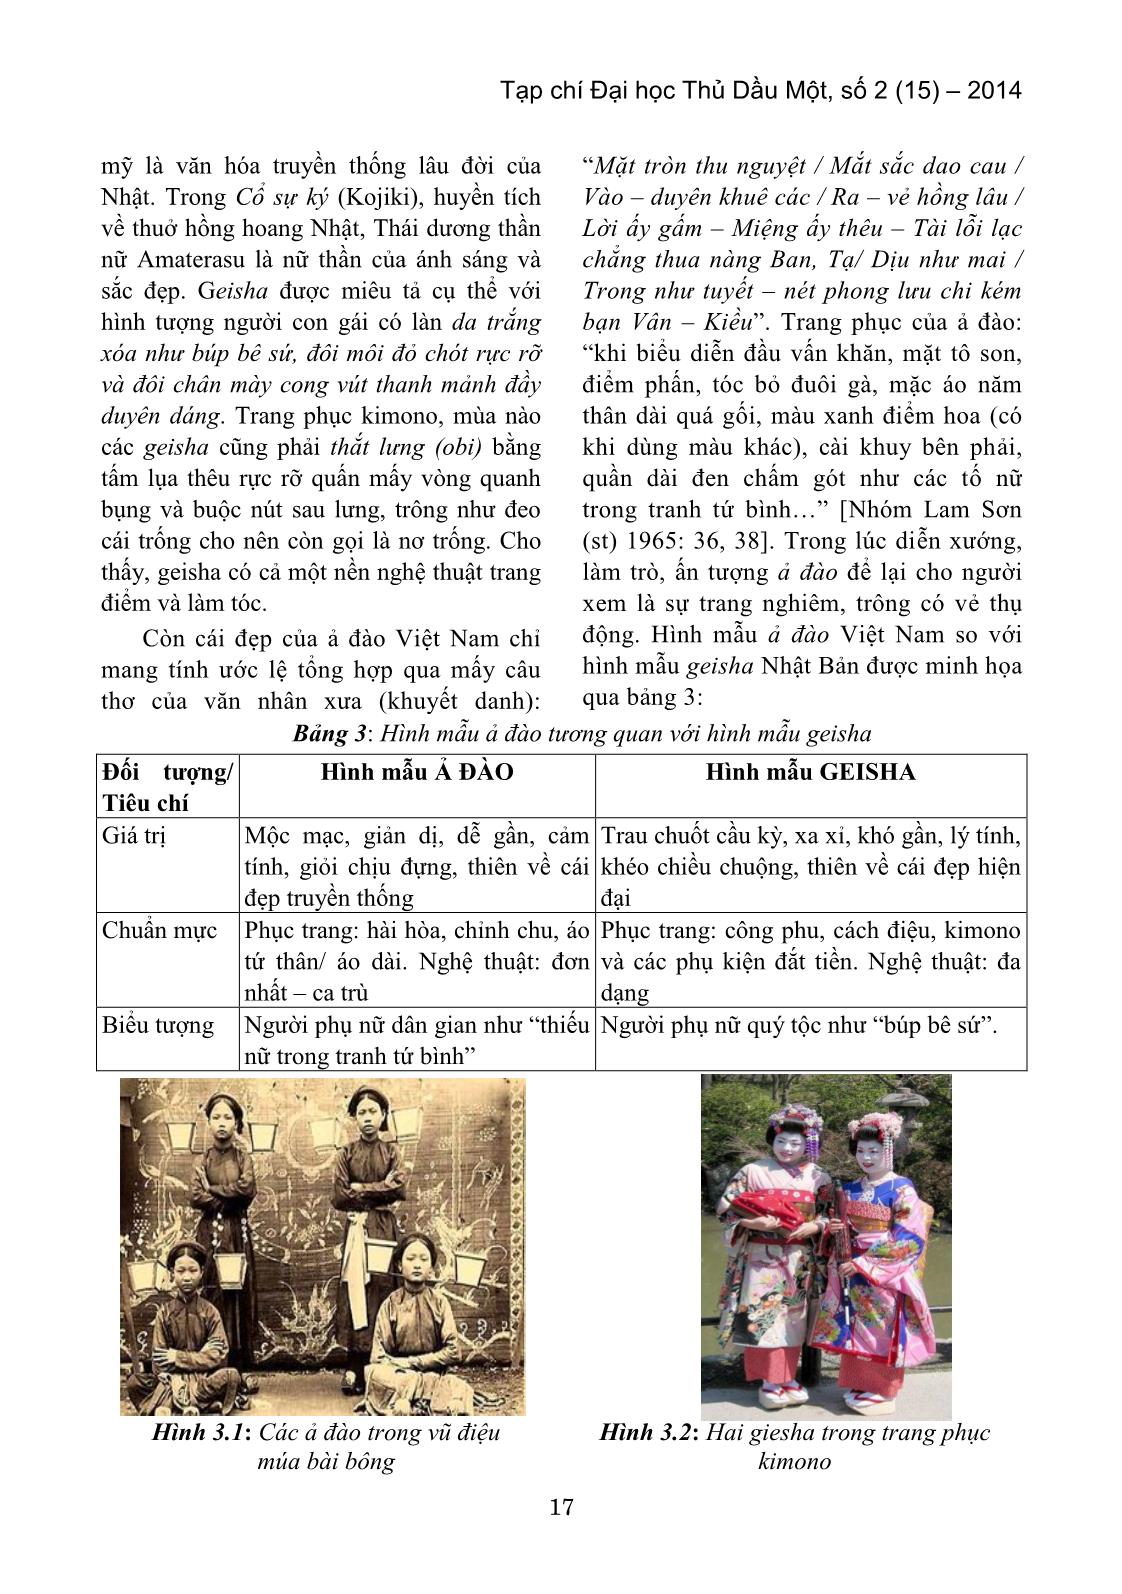 Nghiên cứu xuyên văn hóa về ả đào Việt Nam và Geisha nhật bản trang 5